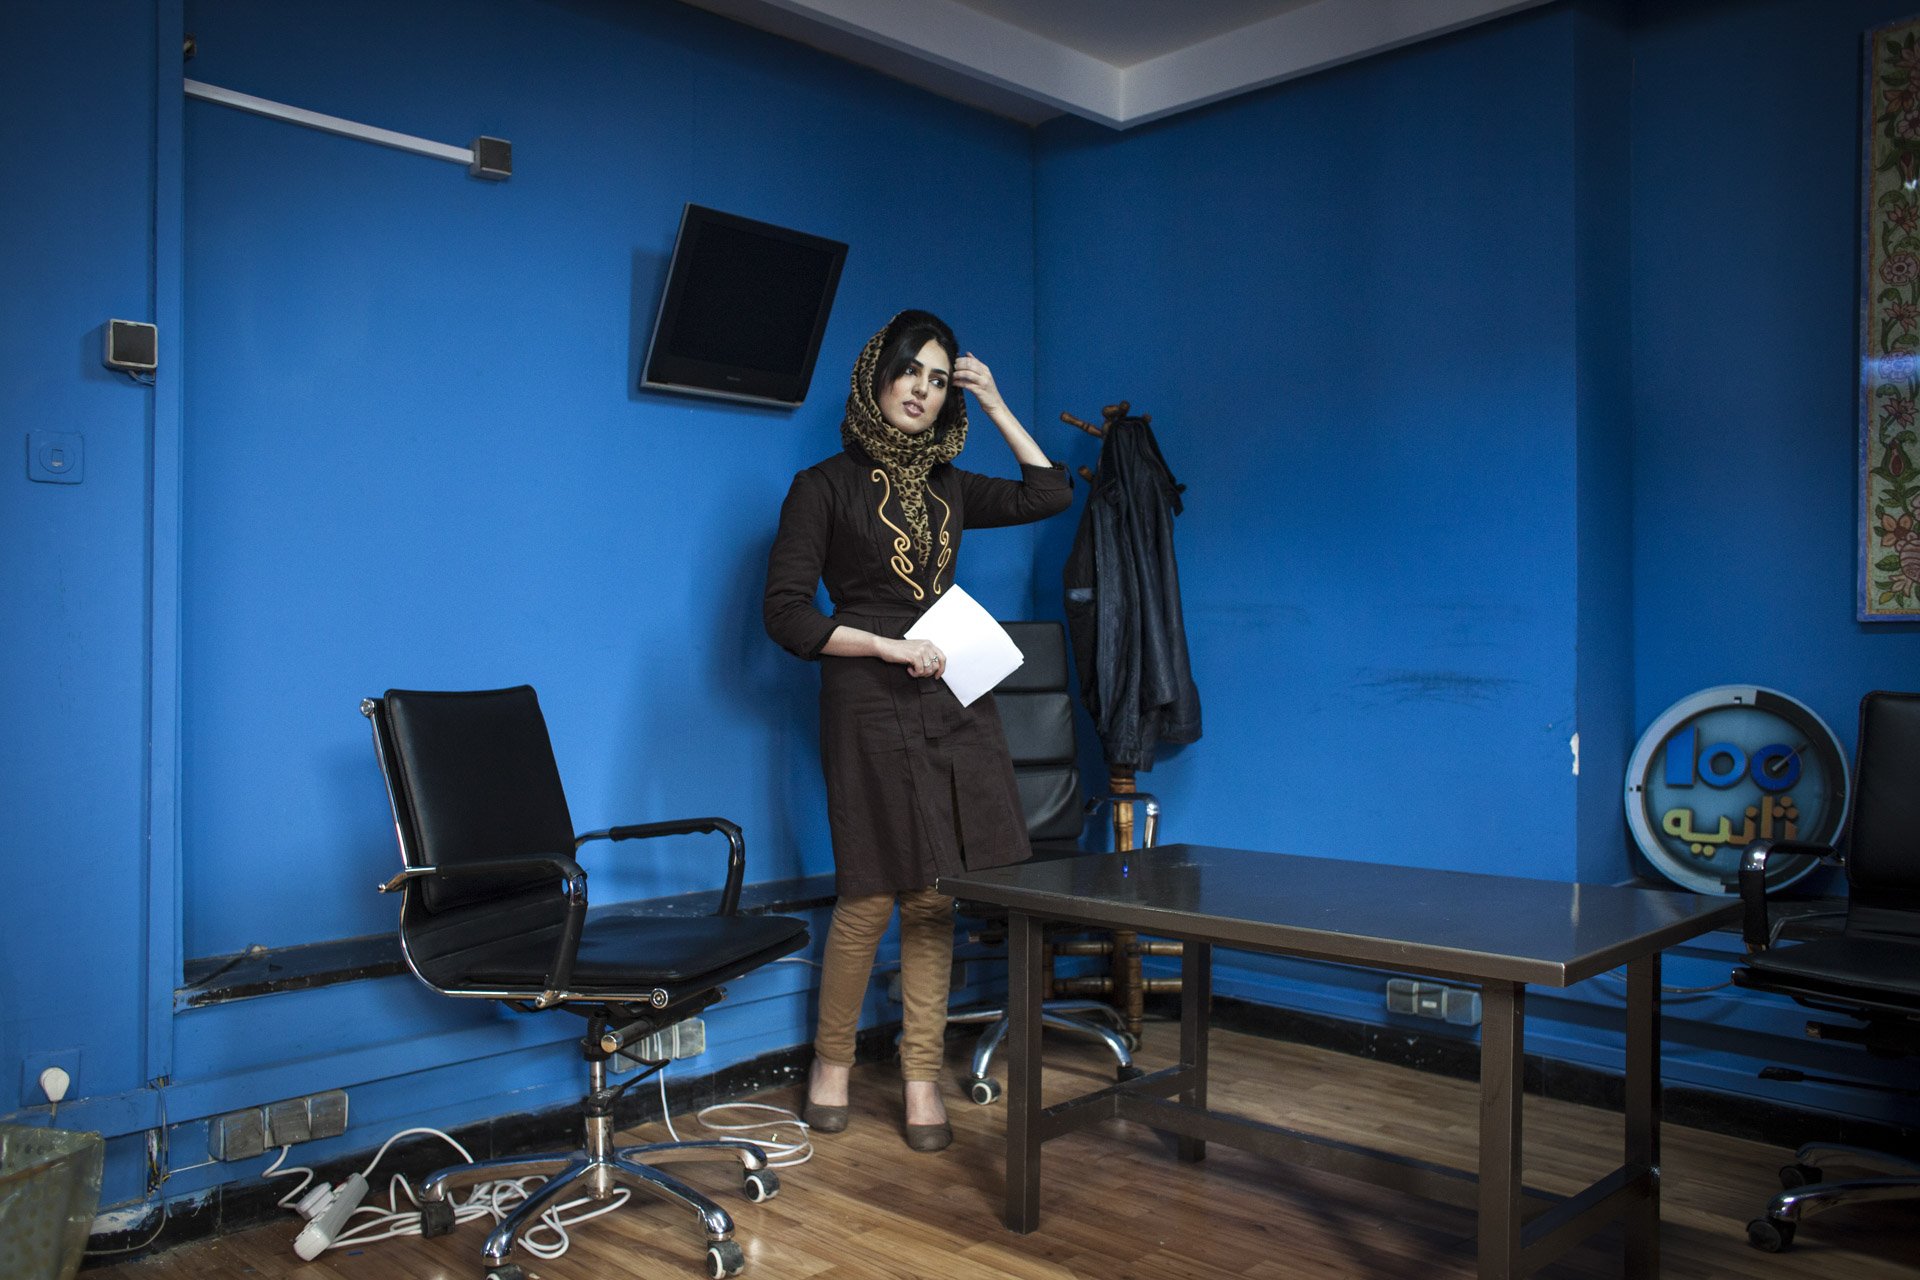  Muzhda, juste avant d'entrer en plateau. Elle anime l'émission de divertissement "Sat Sania" ("Les 100 secondes") qui est diffusée sur Tolo TV, la chaîne privée la plus populaire en Afghanistan. Kaboul, Afghanistan 2014 